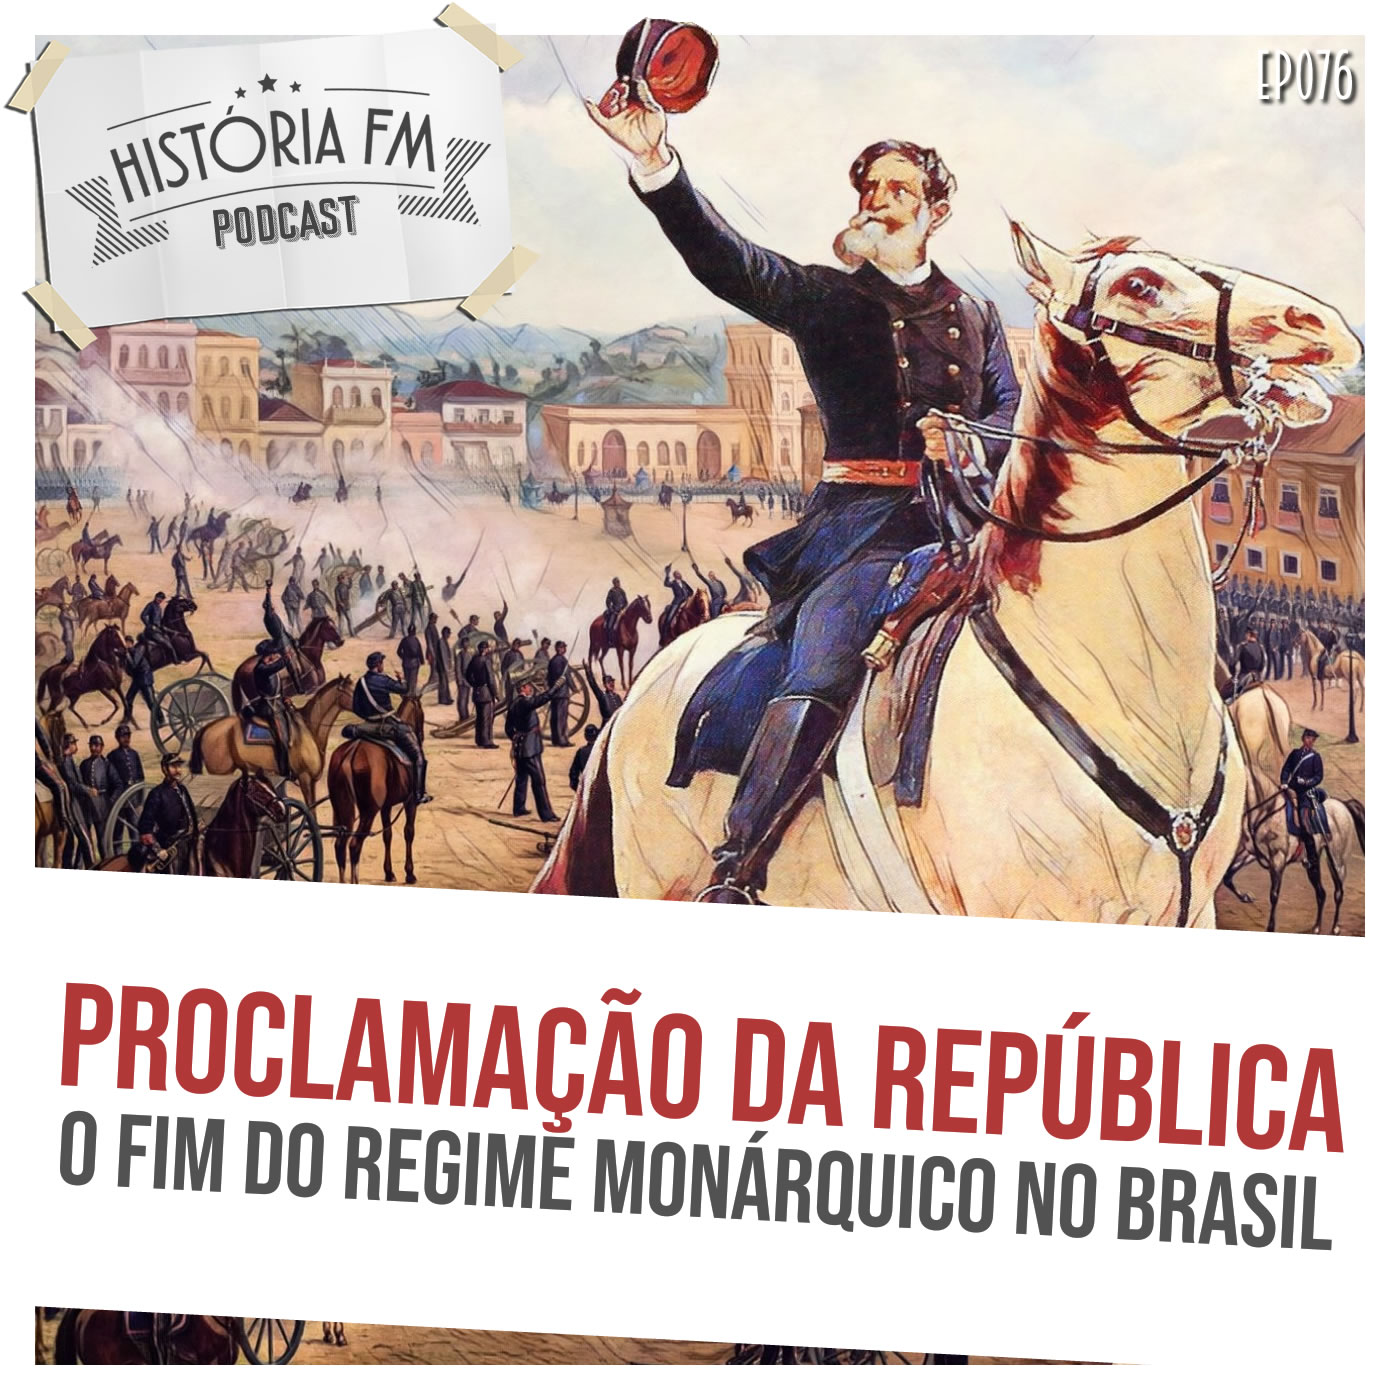 Proclamação da República: o fim do regime monárquico no Brasil